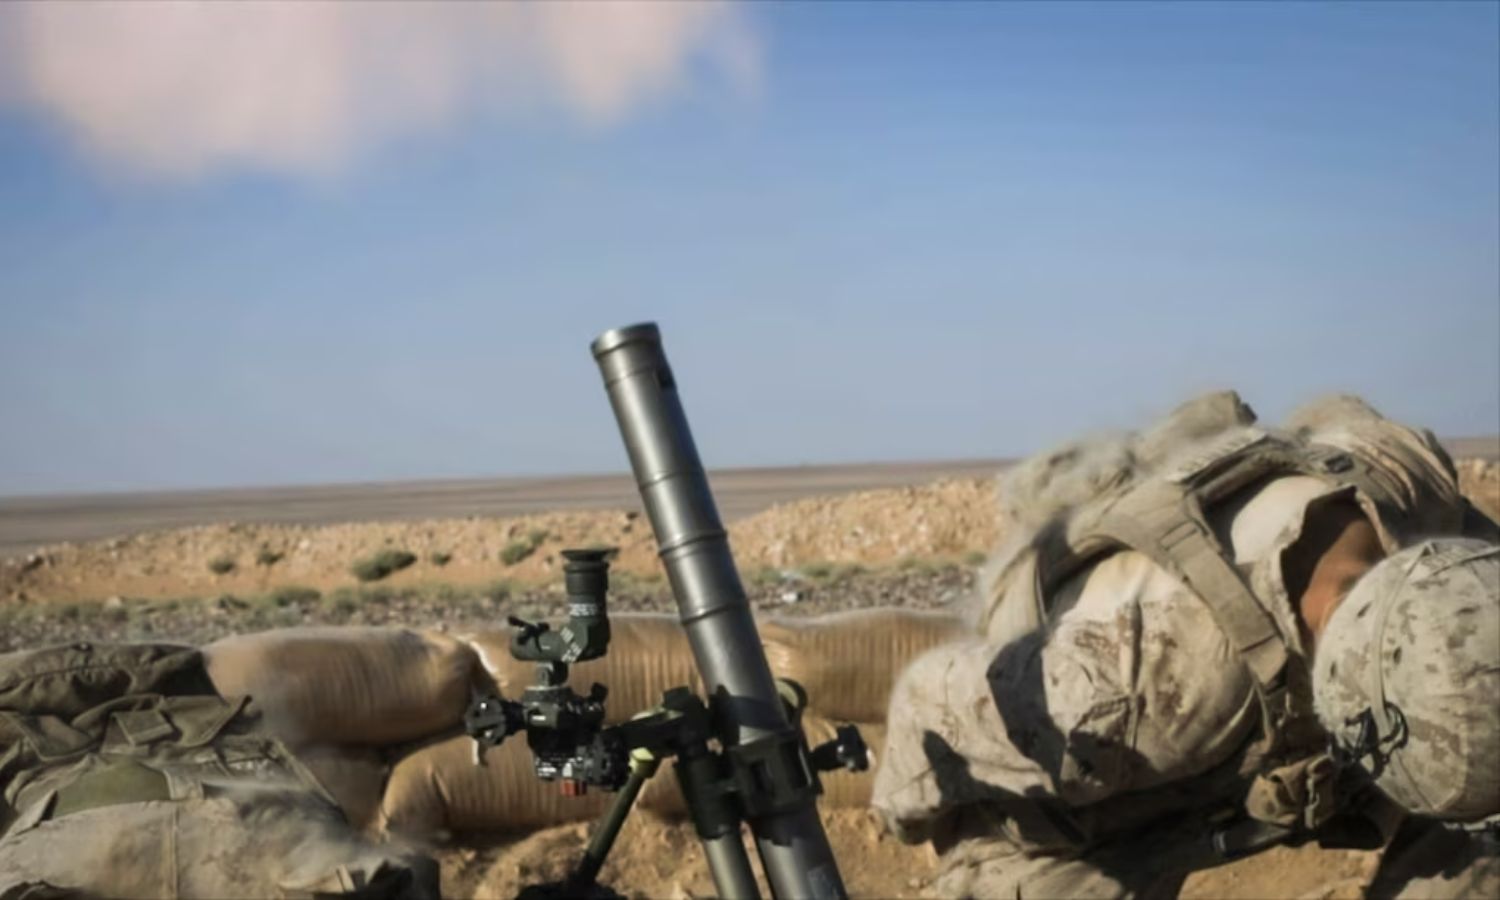 جندي أمريكي يرمي قذائف هاون خلال استعراض عسكري بالقرب من قاعدة التنف العسكرية شرقي سوريا- 7 من أيلول 2018 (سينتكوم)